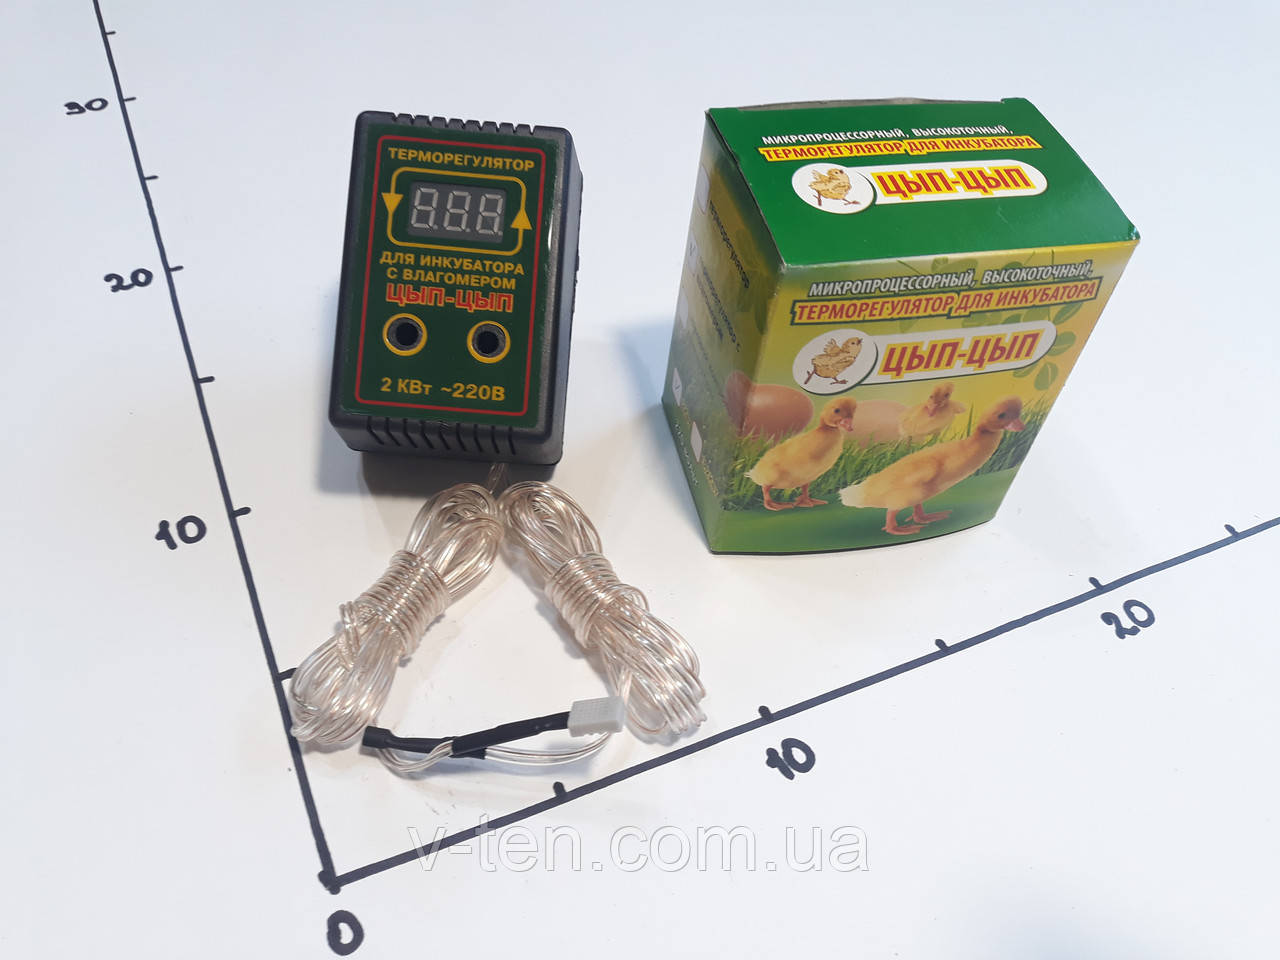 Терморегулятор от +15 до +40°С /10А  цифровой с влагомером для инкубатора ЦЫП-ЦЫП